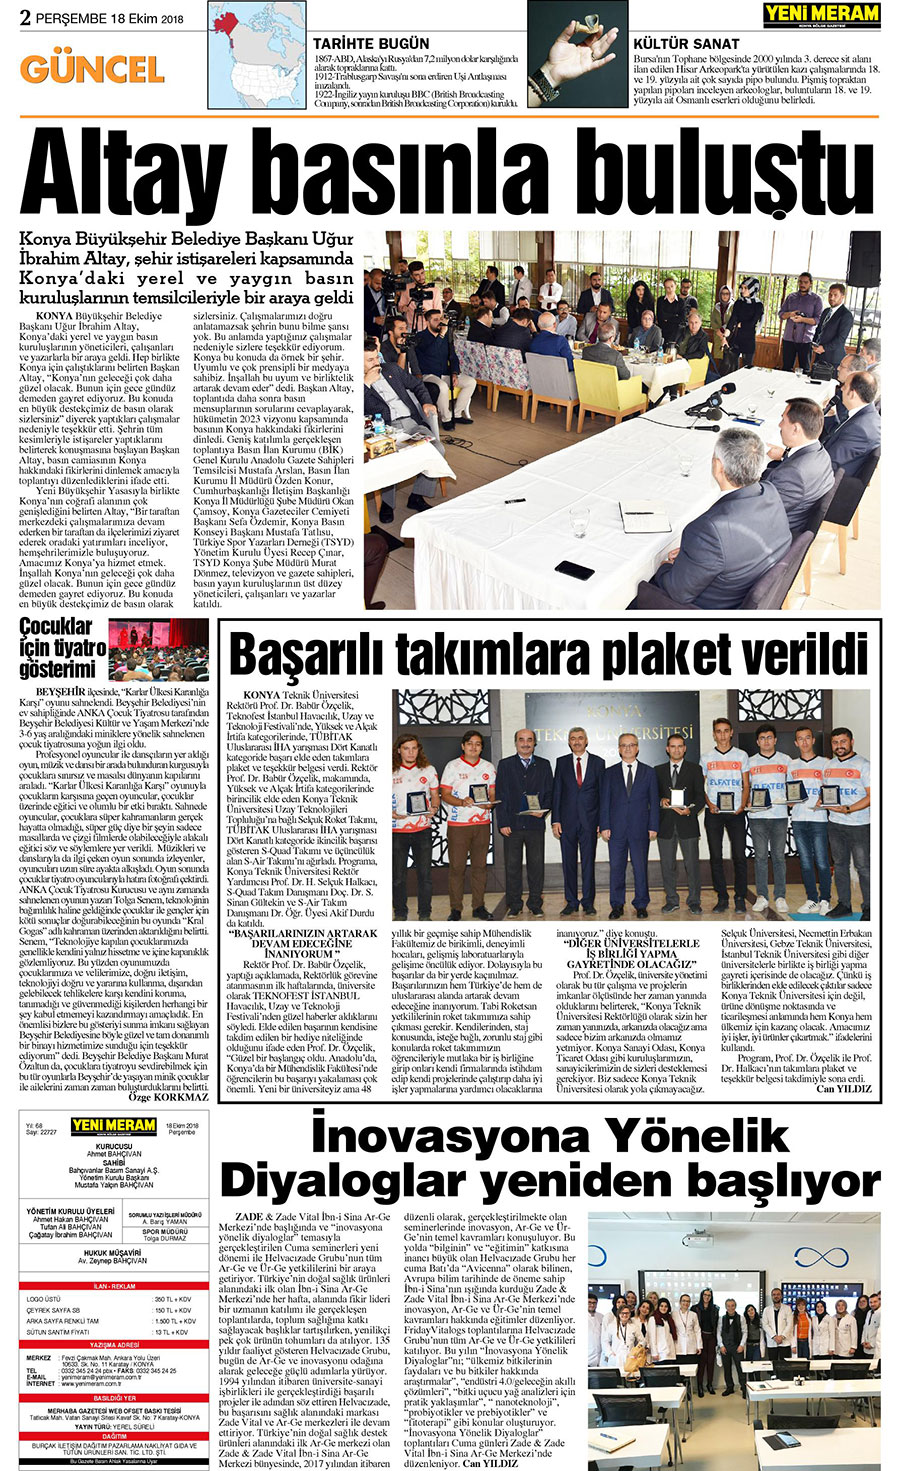 18 Ekim 2018 Yeni Meram Gazetesi